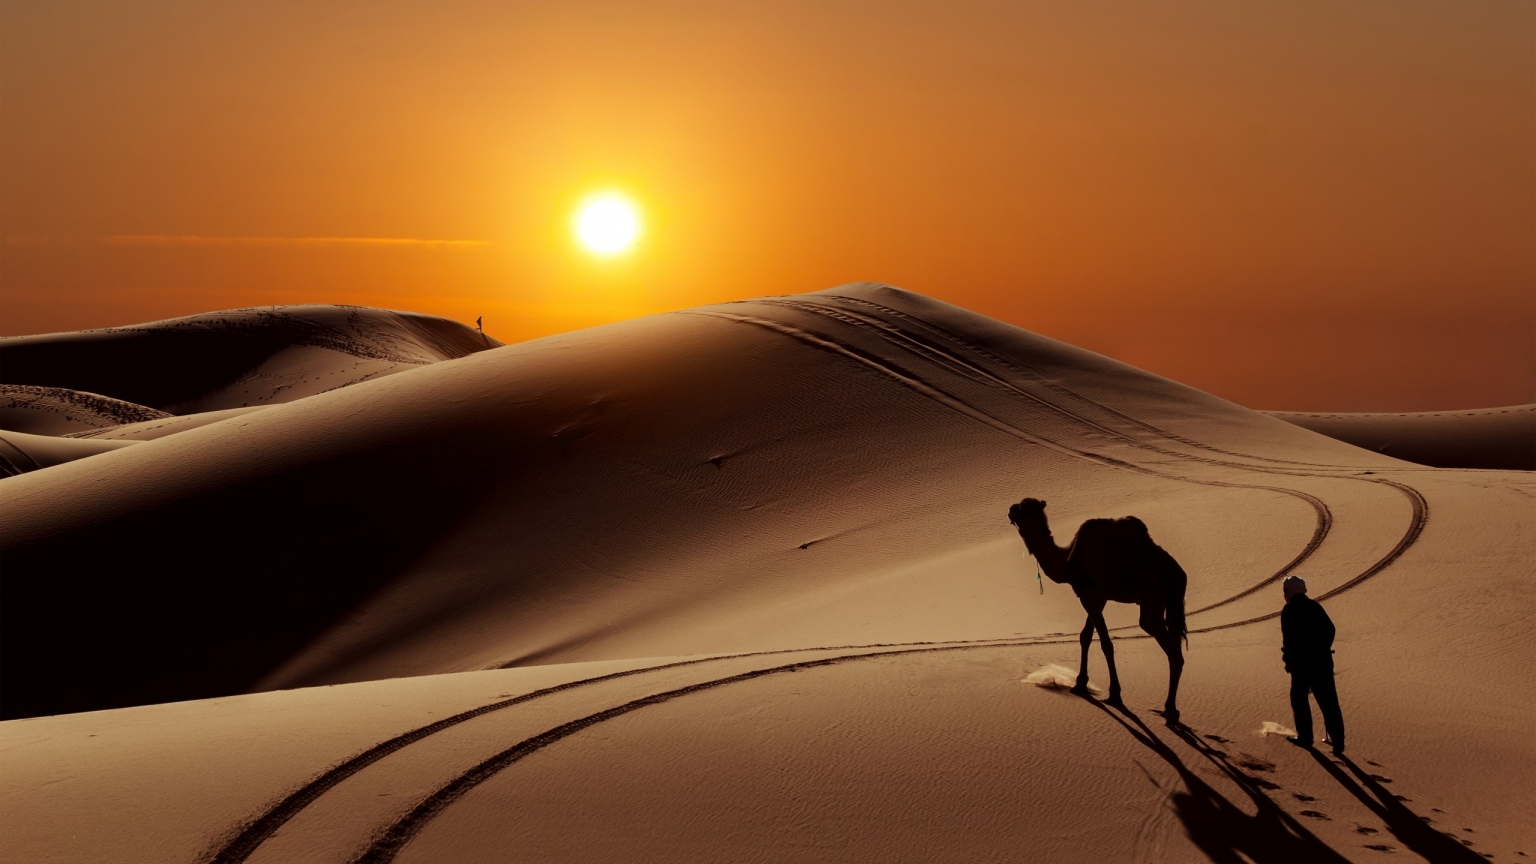 Sunset in Desert for 1536 x 864 HDTV resolution